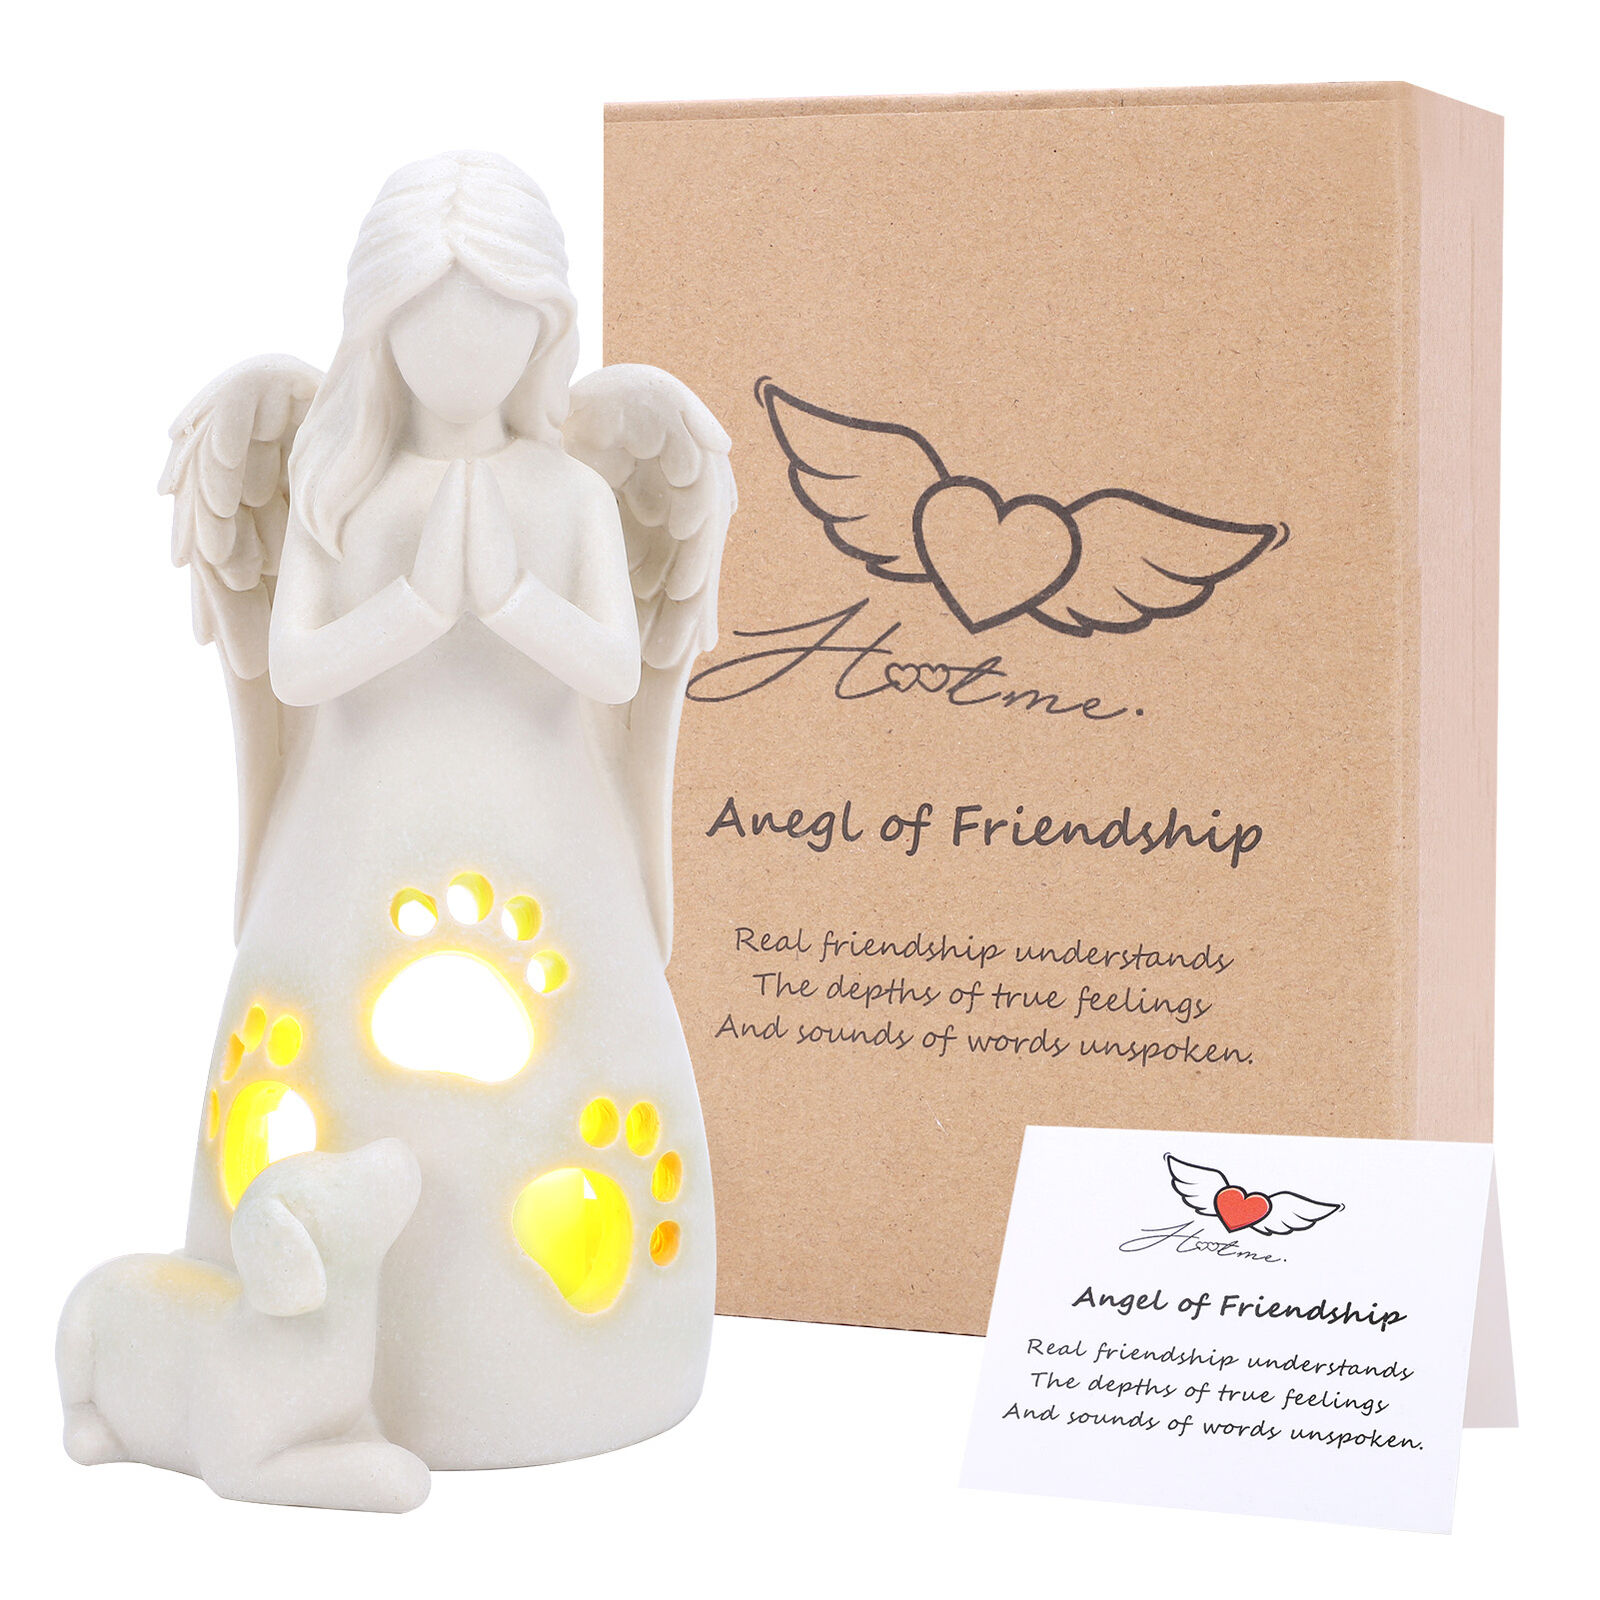 Dog Angel Figurine Candler Holder Statue of Friendship Pet Dog Memorial Gift